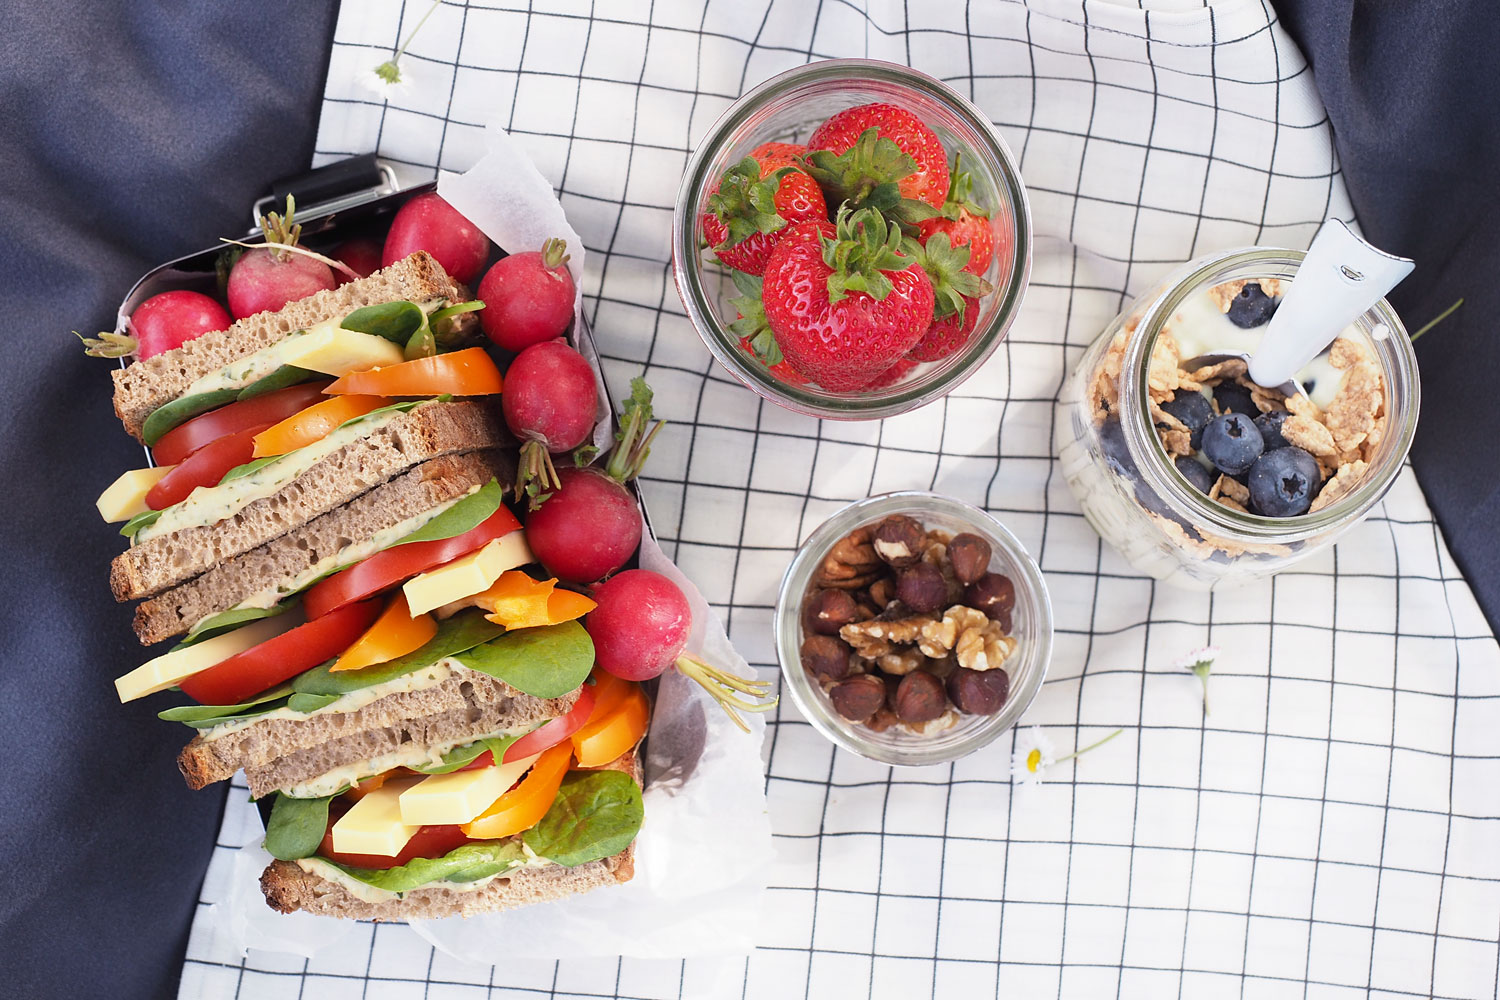 Picknickzeit ist Kaffeezeit! Wie soll das denn funktionieren? Fünf Tipps für ein ganz spontanes Frühstück im Freien